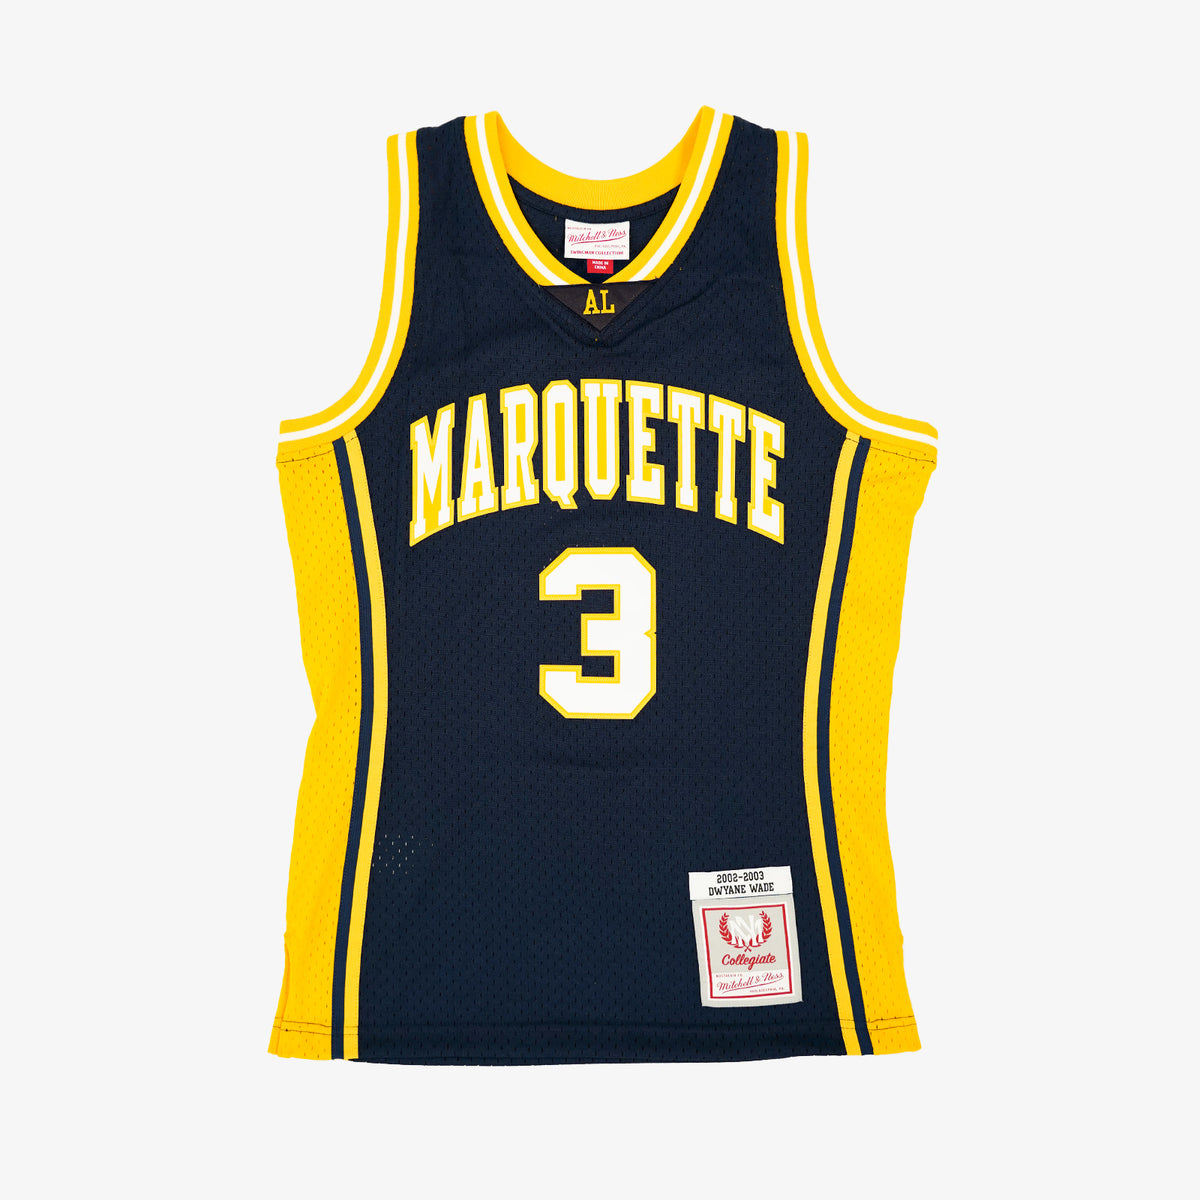 Retro Brand Men's Marquette Golden Eagles Dwyane Wade #3 White Replica Basketball Jersey, Small